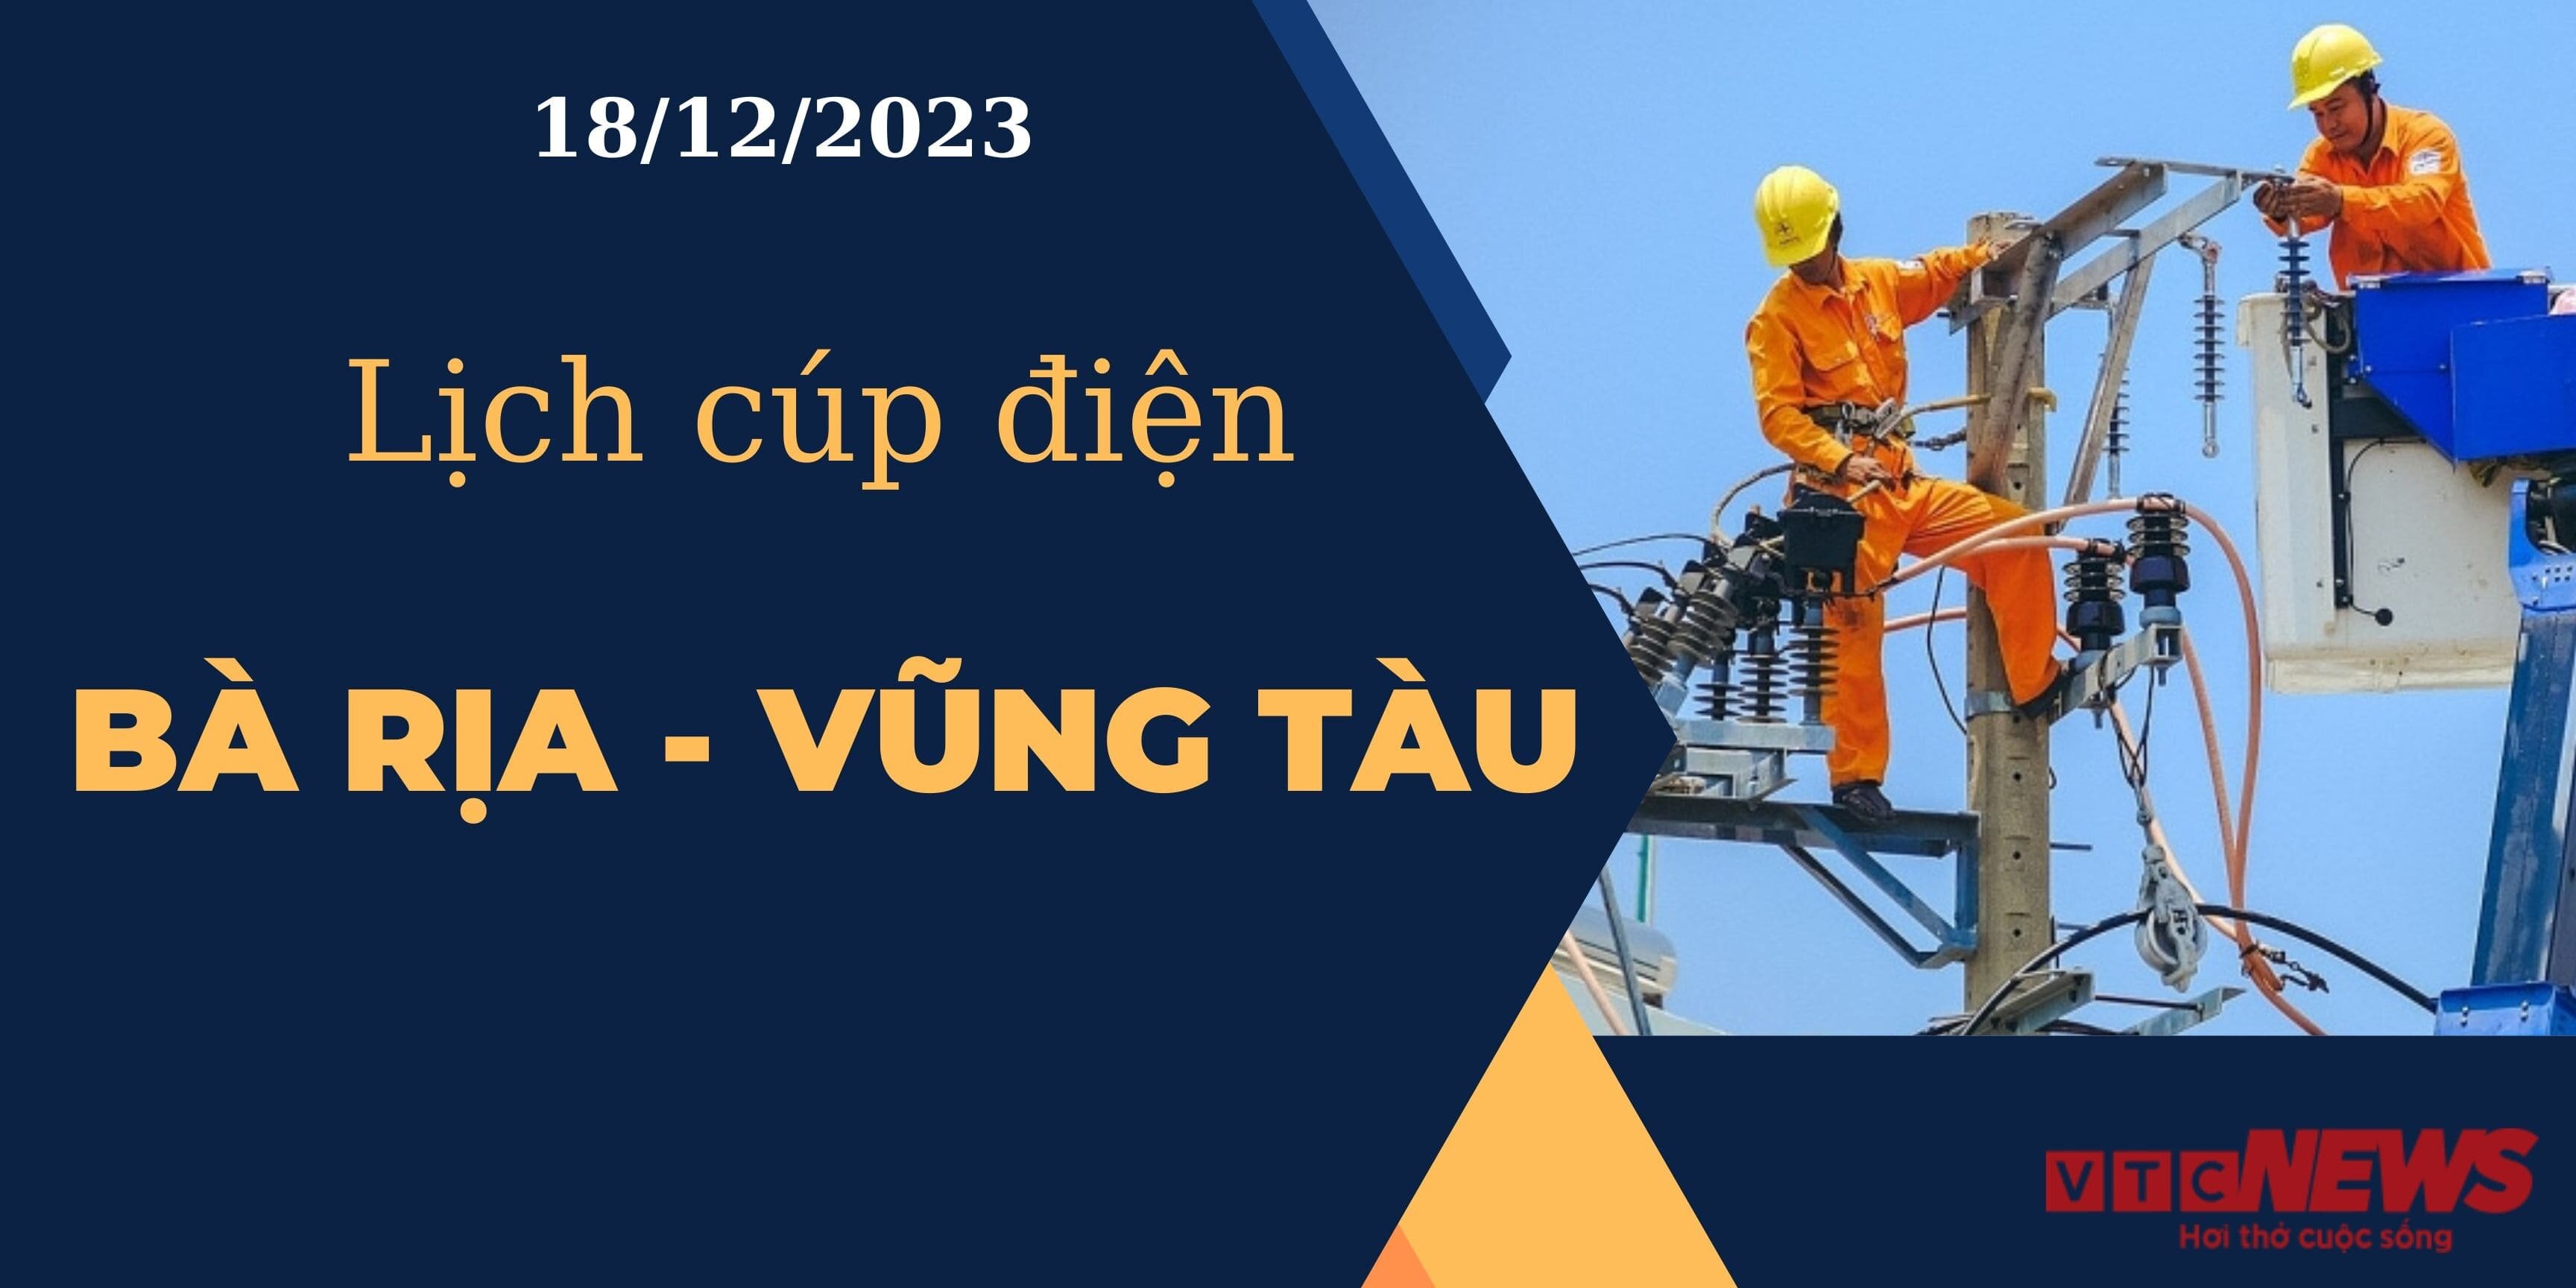 Lịch cúp điện hôm nay tại Bà Rịa - Vũng Tàu ngày 18/12/2023